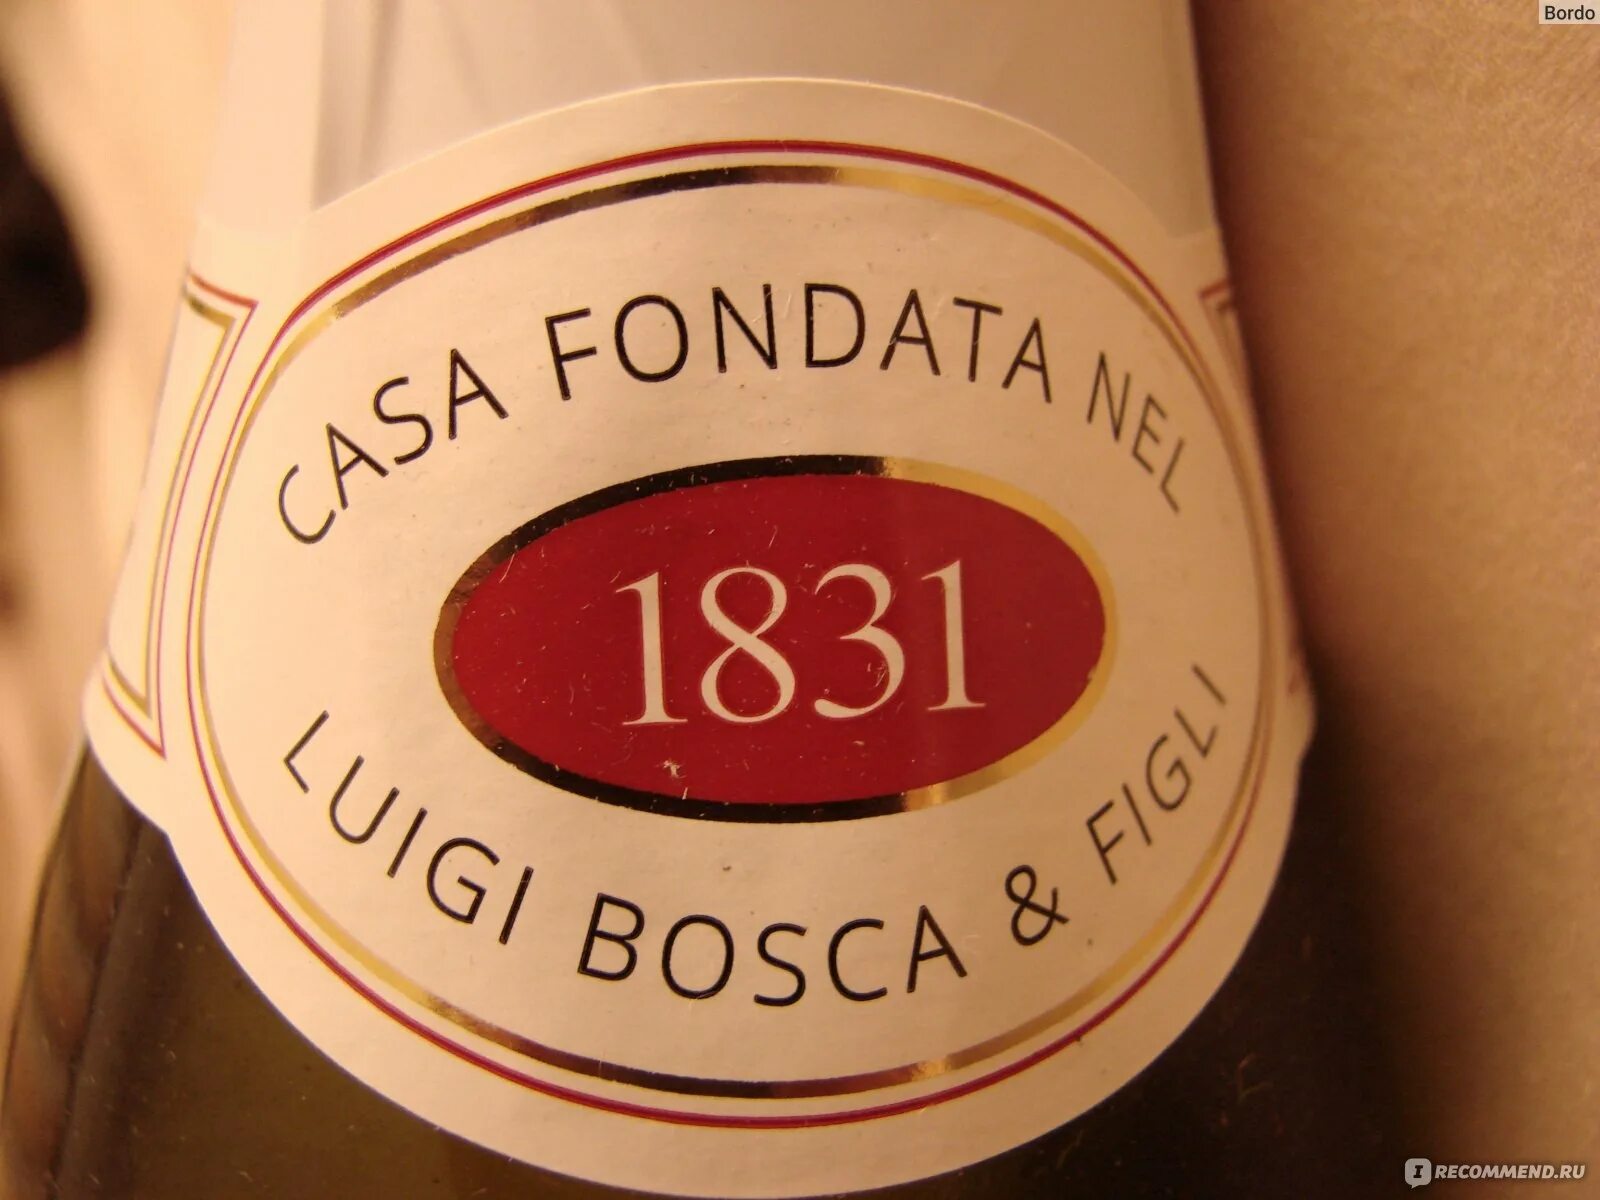 Bosca Prosecco. Напиток Bosca белый полусладкий. Вино игристое сладкое Bosca Bosca. Игристое вино Боско белое полусладкое. Боско безалкогольное